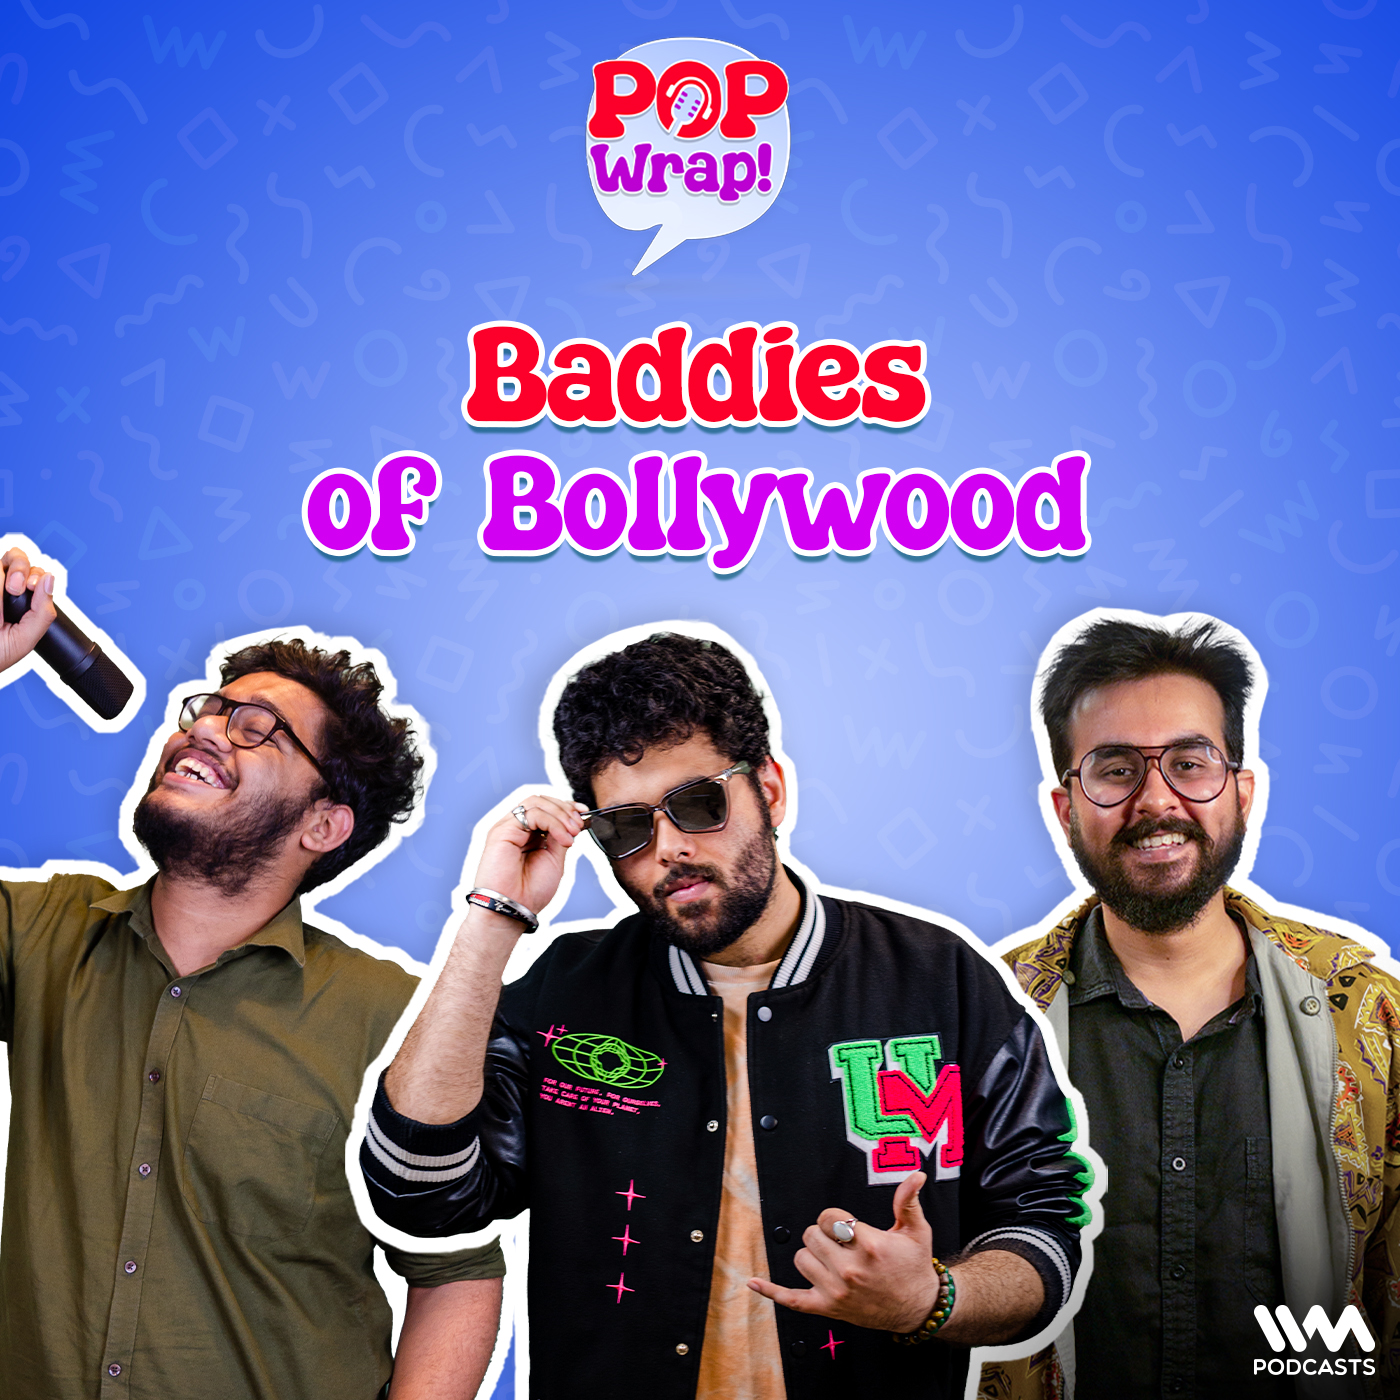 Baddies of Bollywood | Pop Wrap!